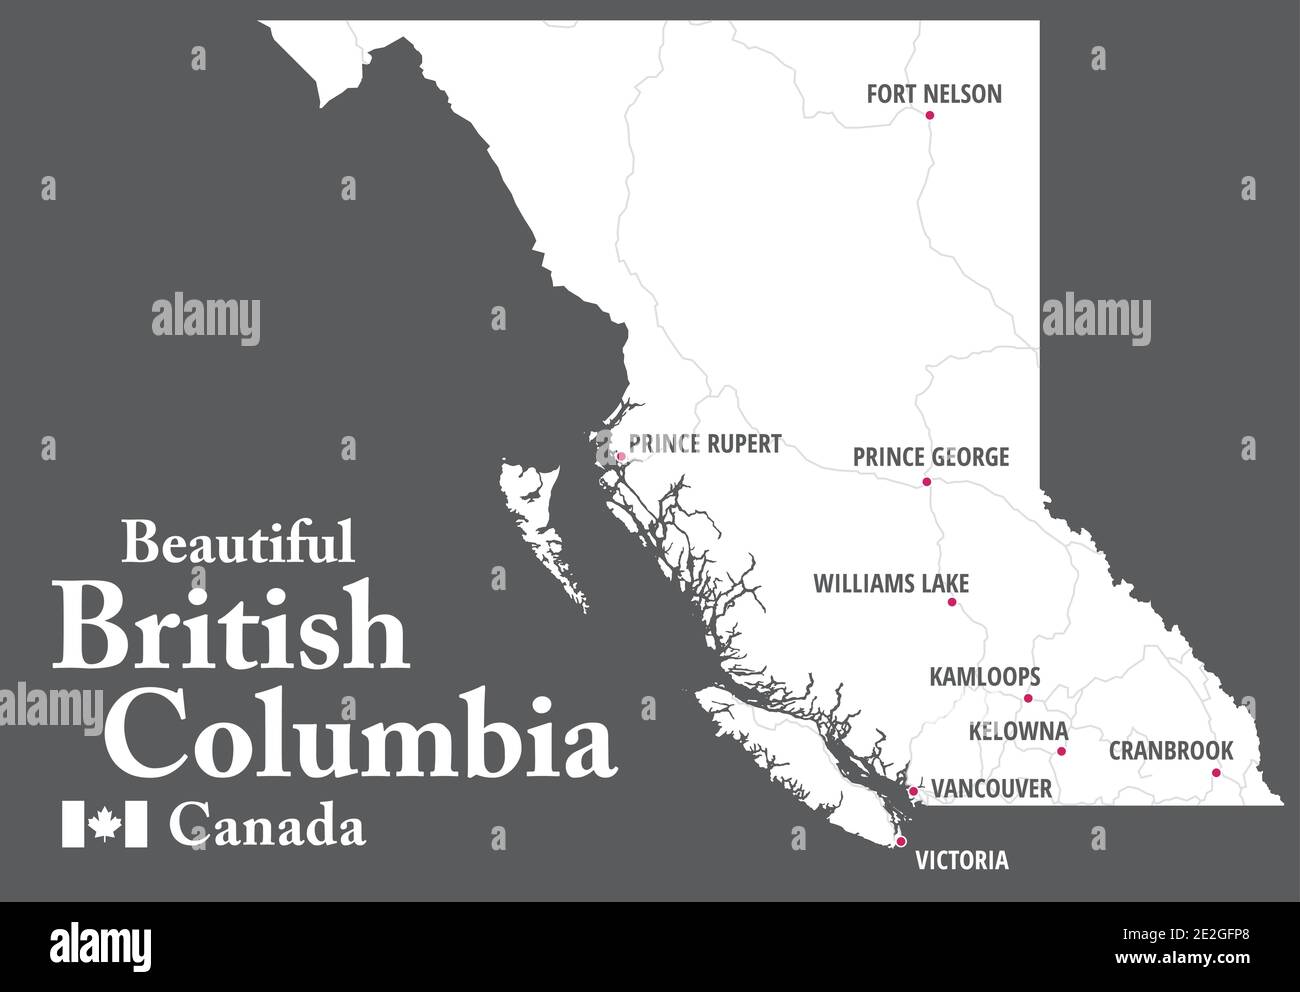 Bella British Columbia Mappa. Canada. Forma bianca della provincia BC con autostrade e destinazioni turistiche contrassegnate. Guida turistica. Illustrazione Vettoriale